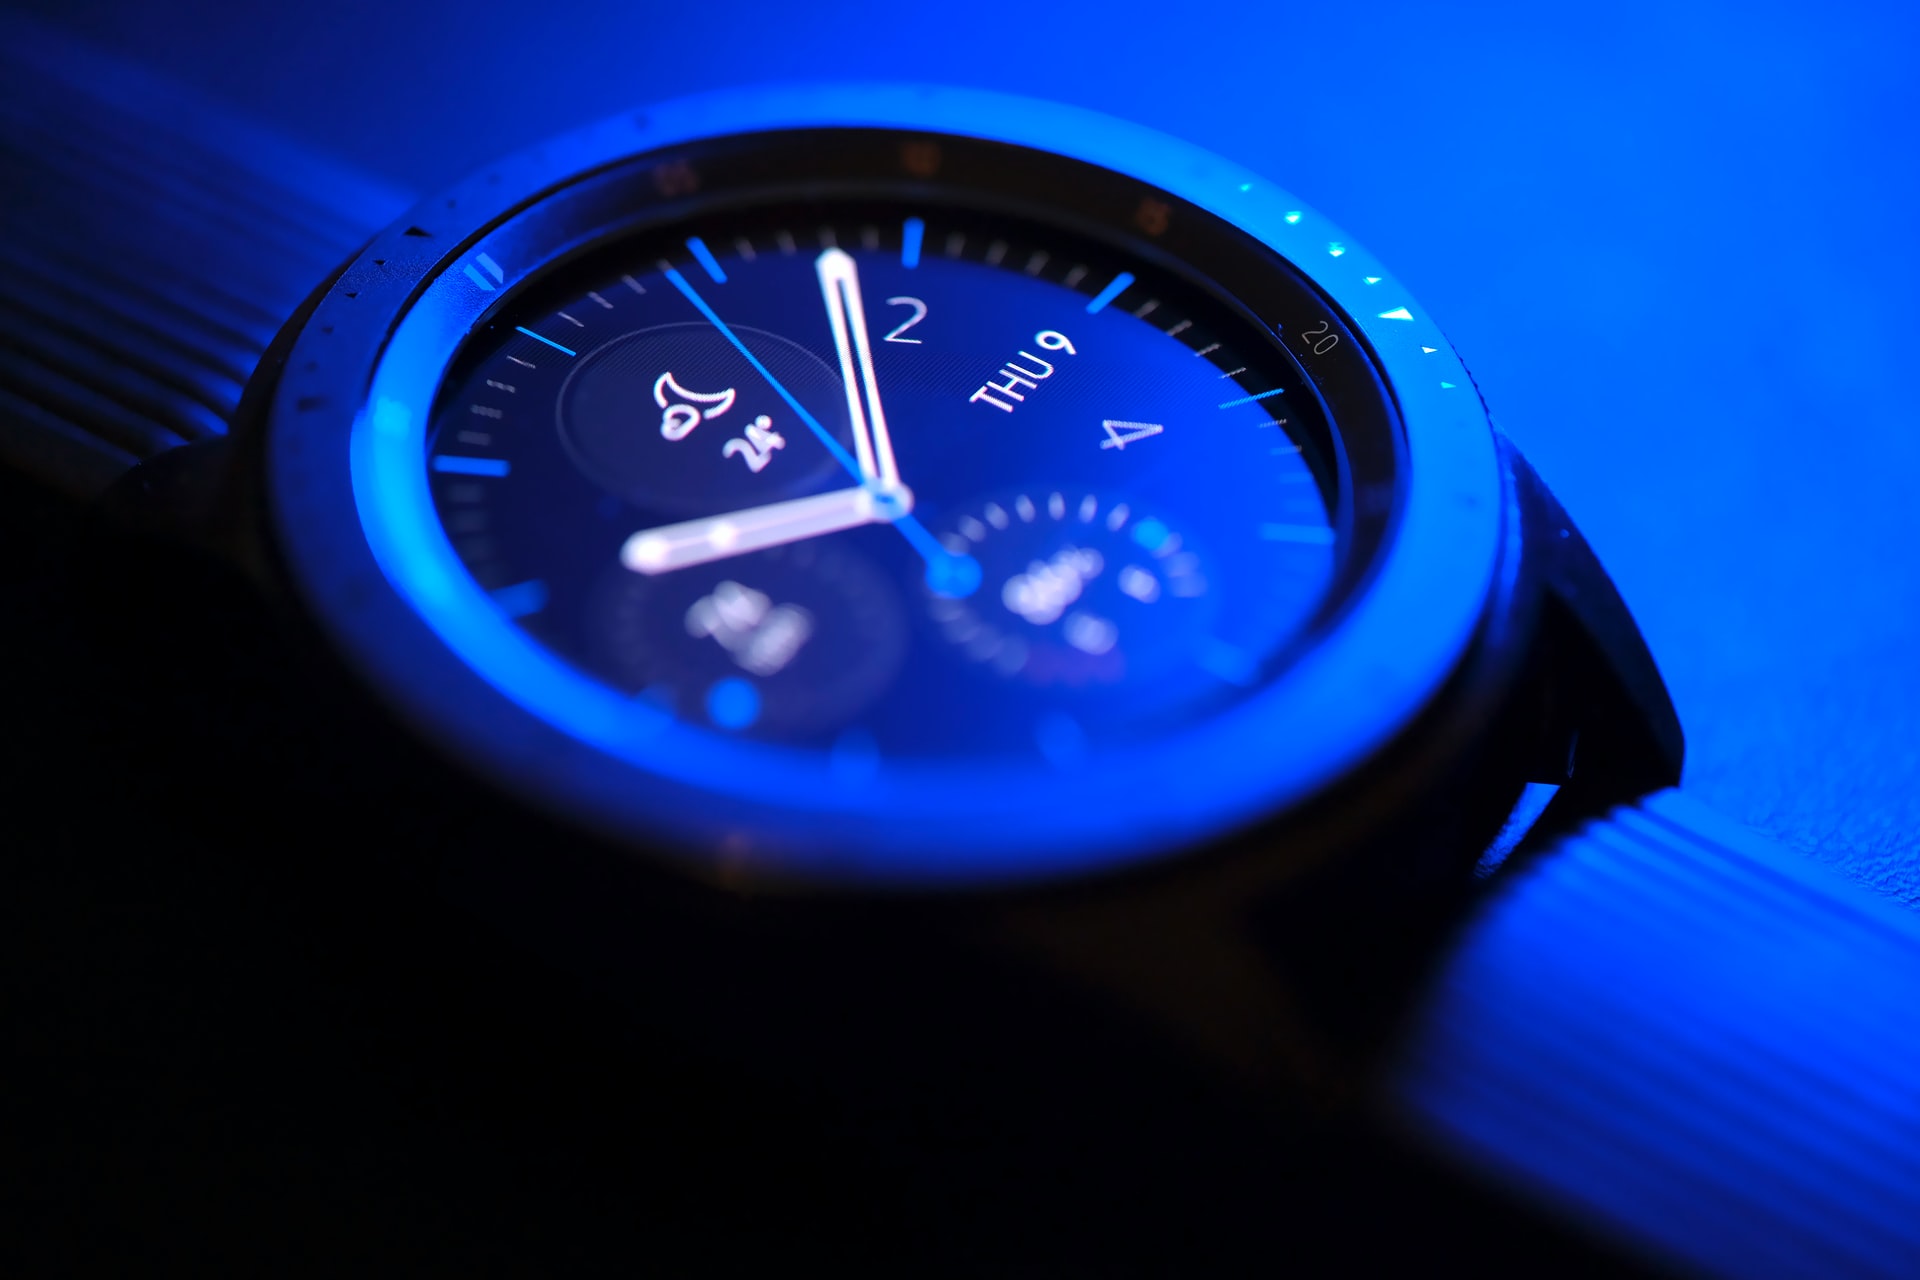 Samsung Galaxy Watch 4 review: Google smartwatch raises bar